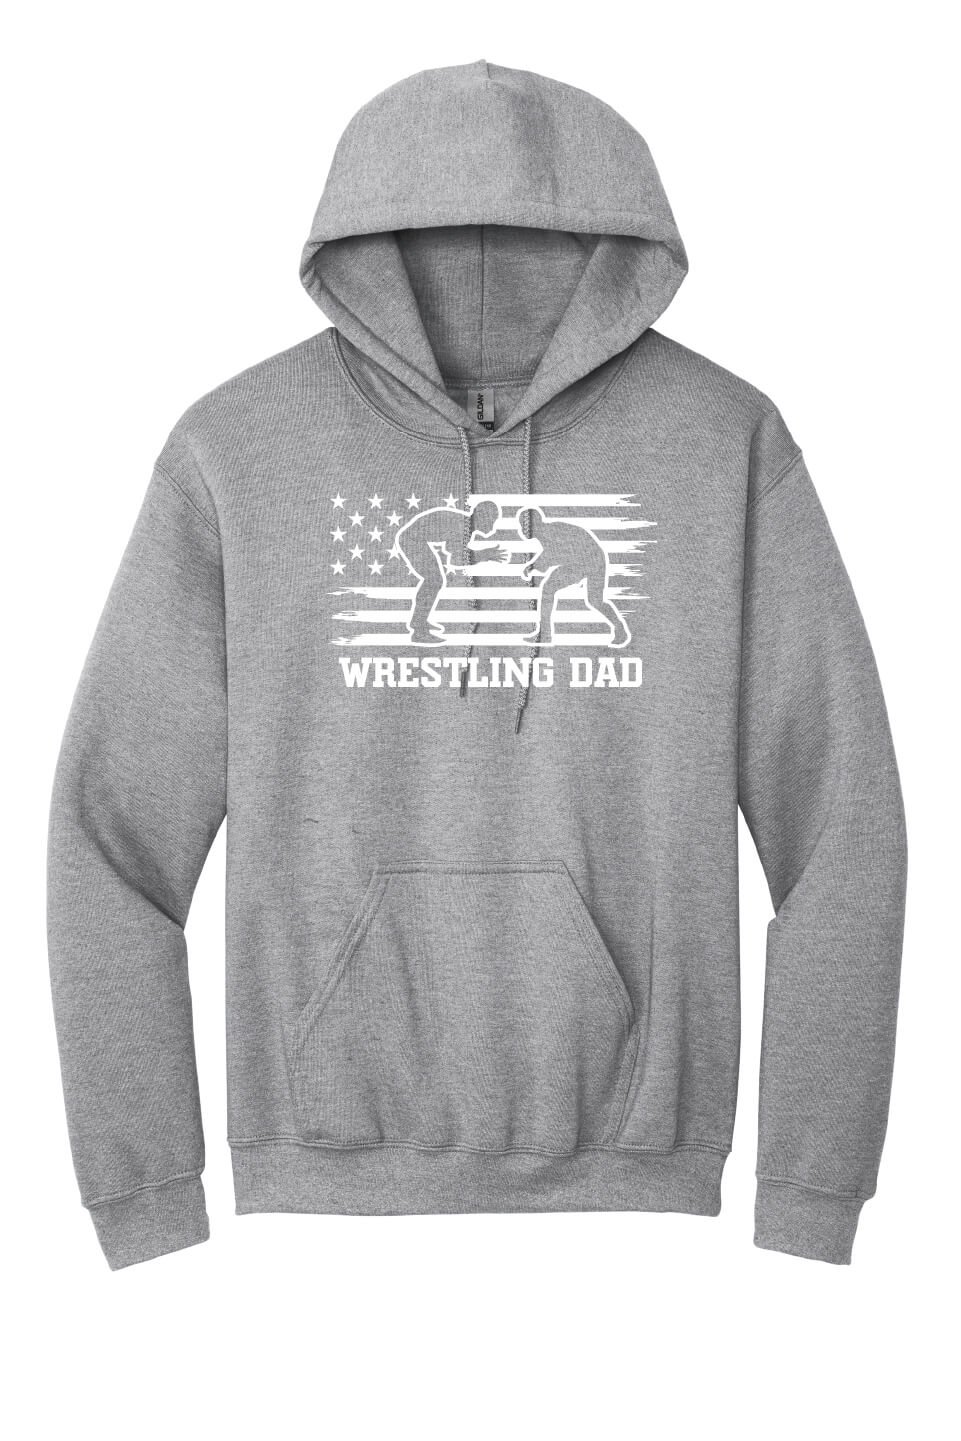 Wrestling Dad Hoodie gray